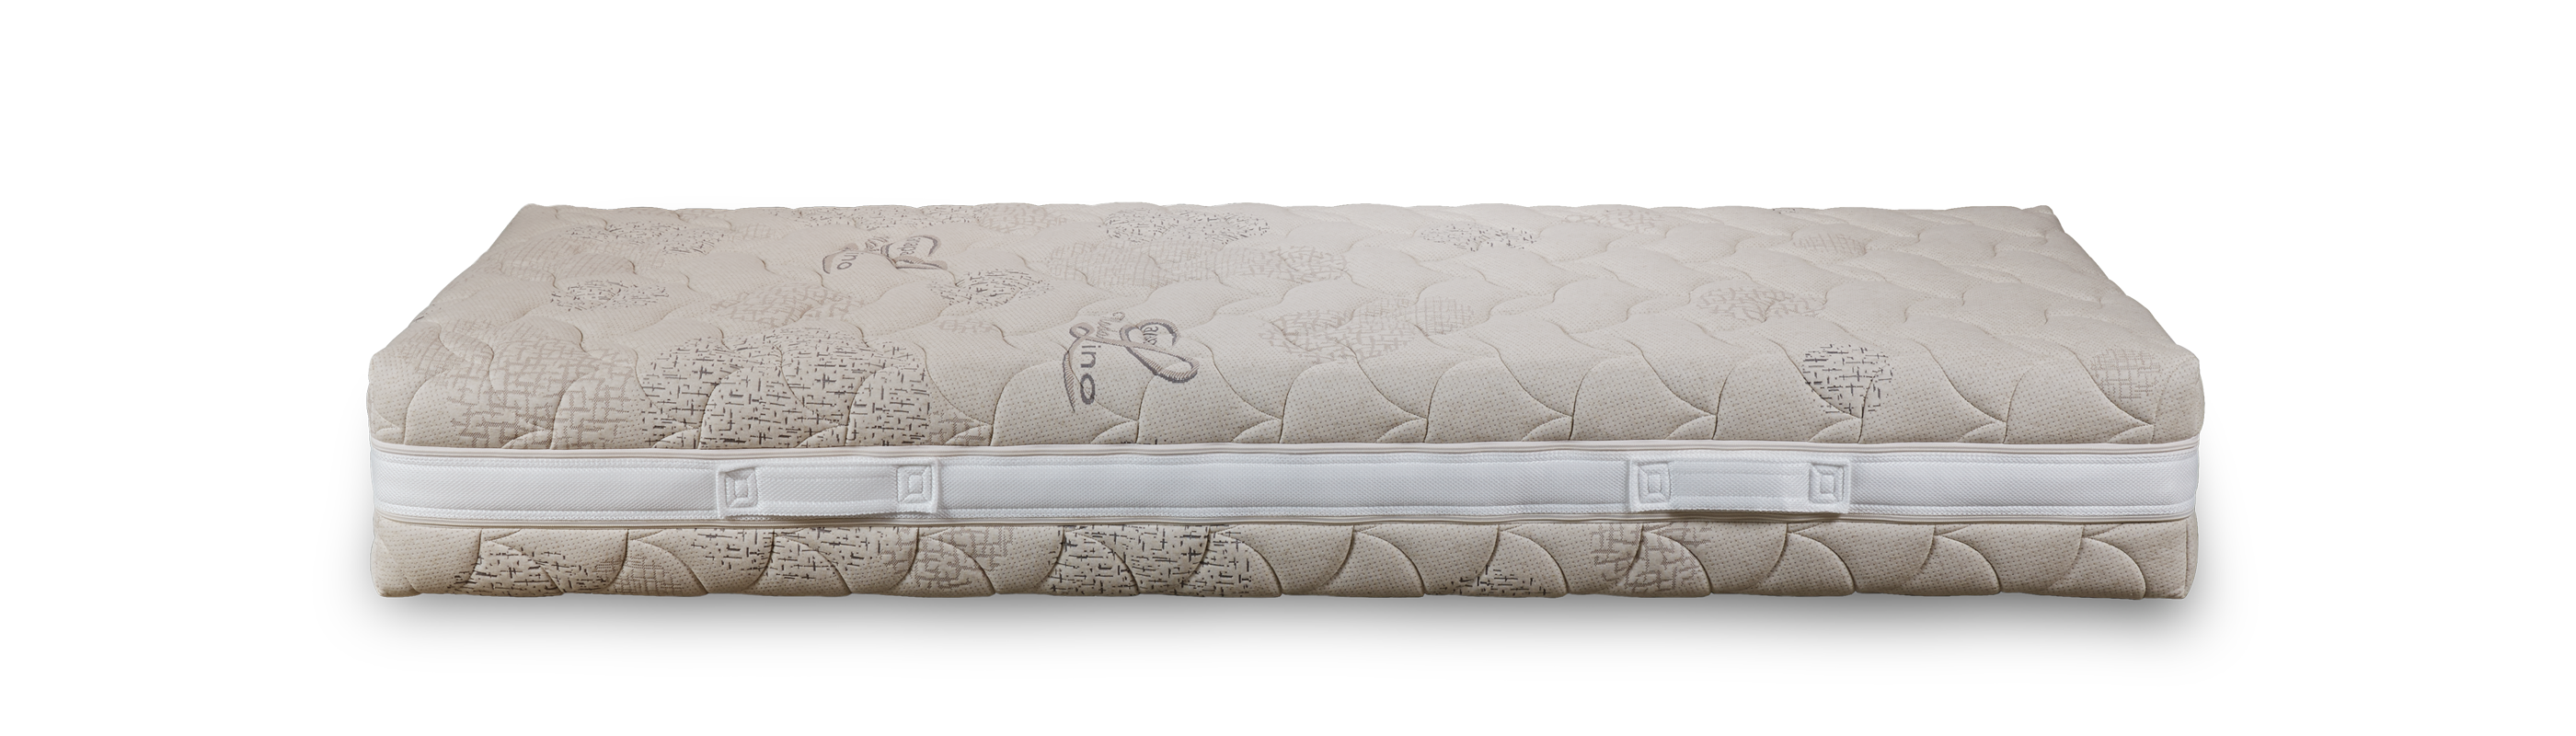 5-layer viscoelastic mattress | Royal Fresh